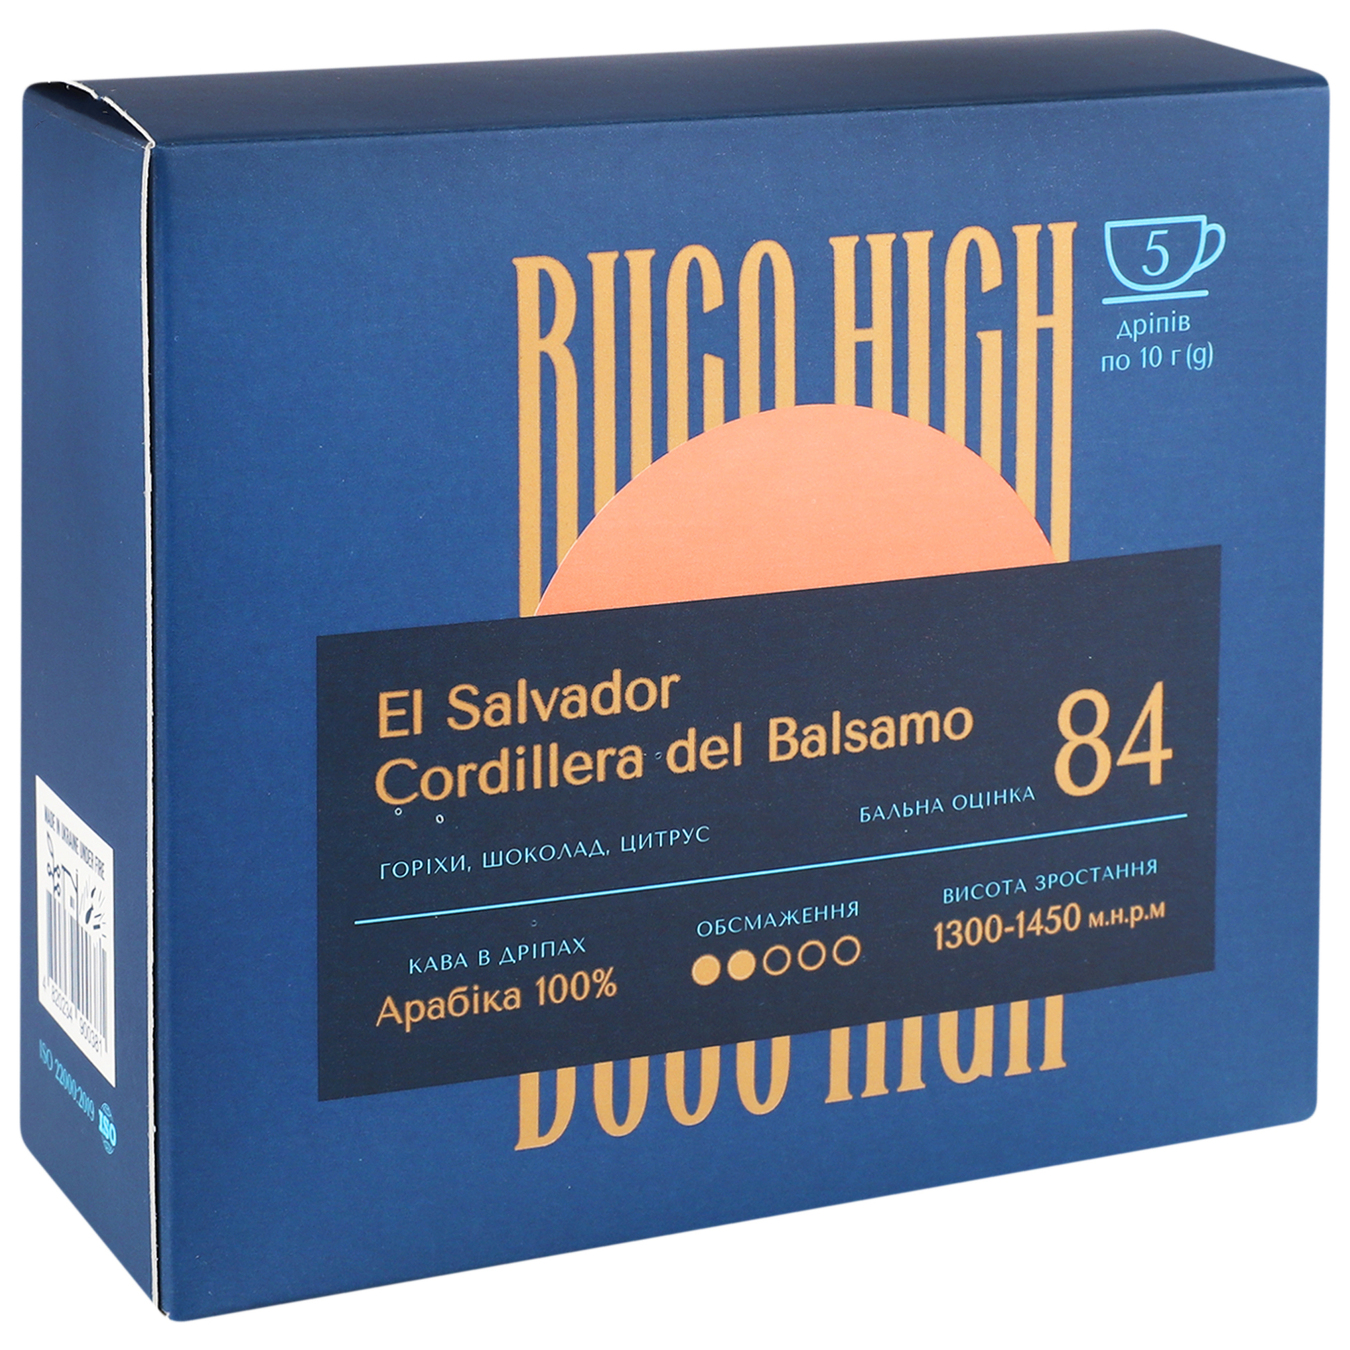 El Salvador Cordillera del Balsamo Buco High (coffee in drip) 5*10g 4